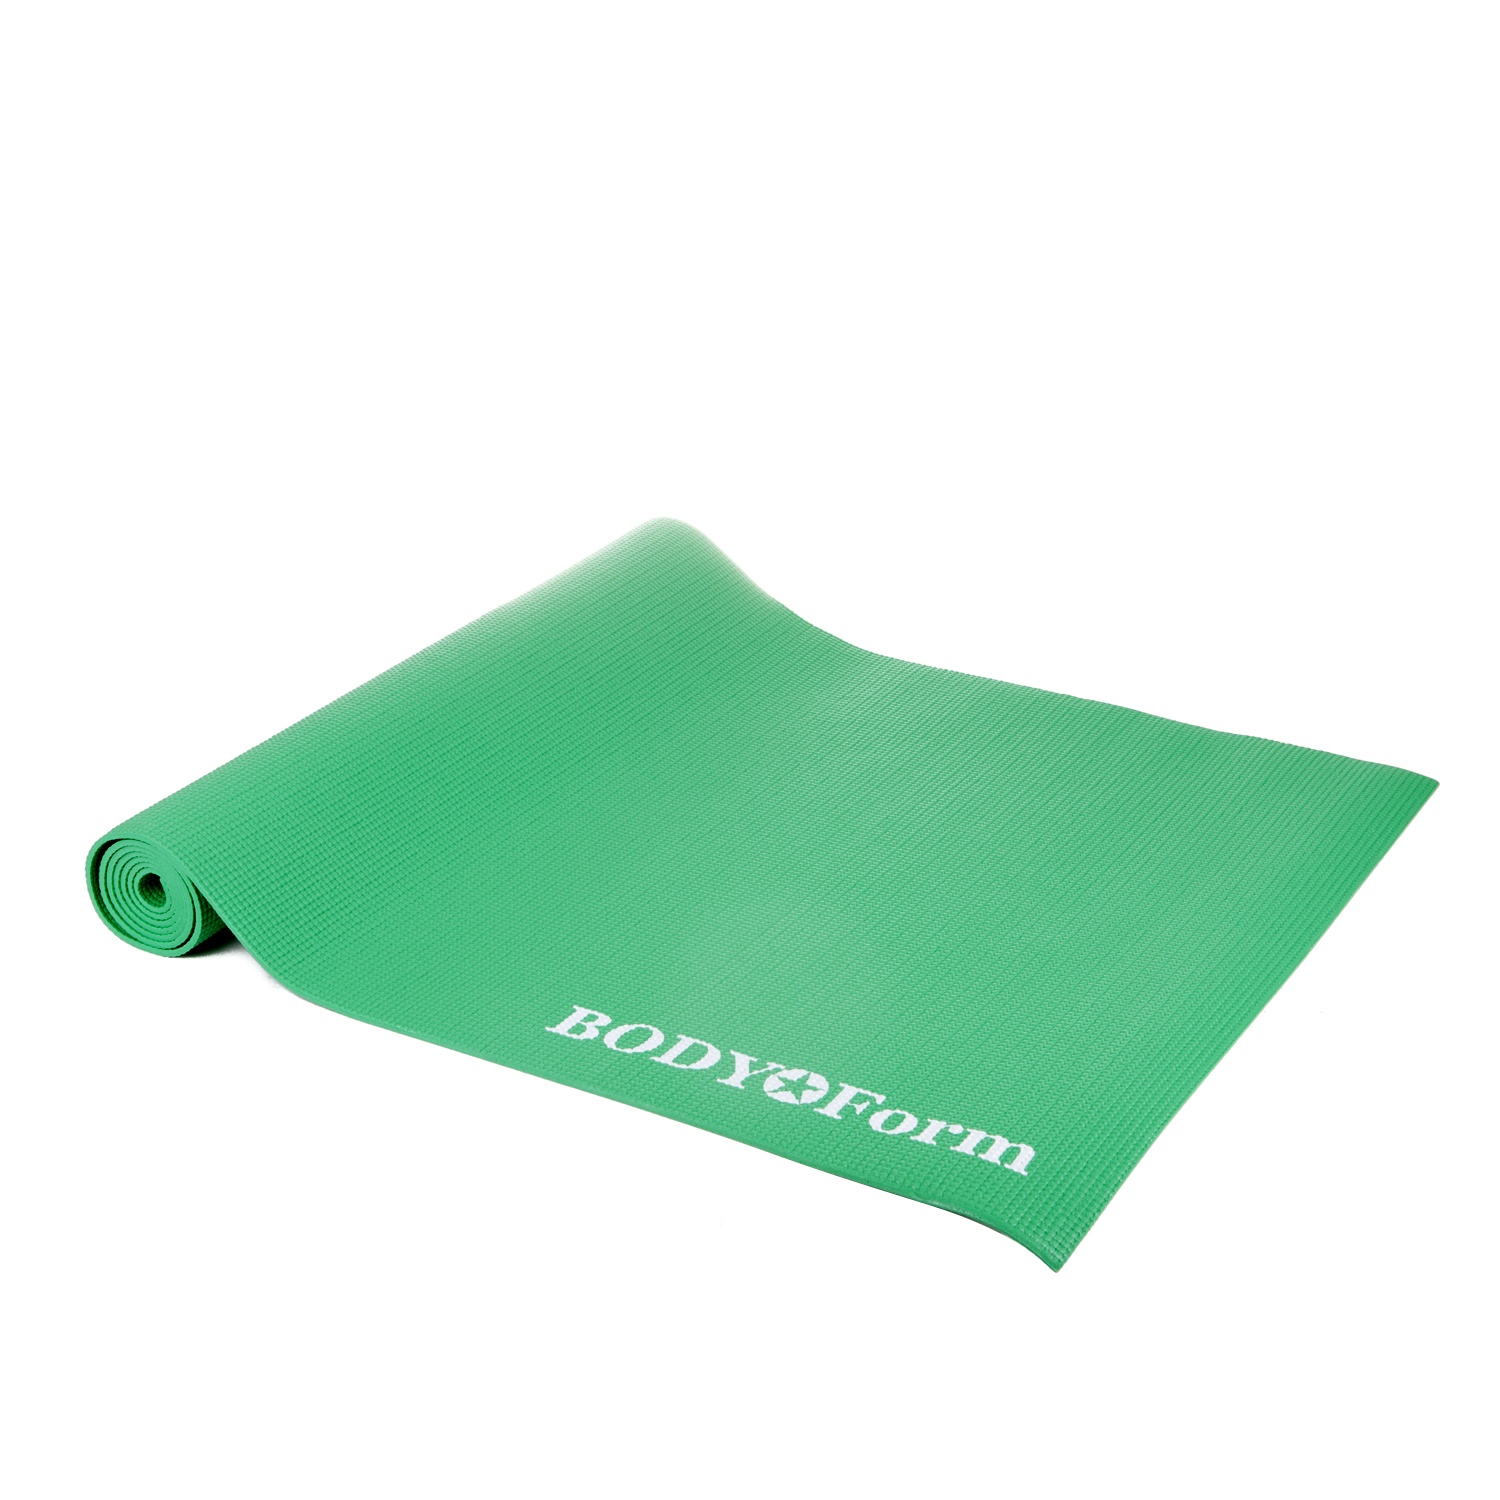 Мат BodyForm Коврик гимнастический BF-YM01C в чехле 173*61*0,4 см., BF-YM01C, зеленый